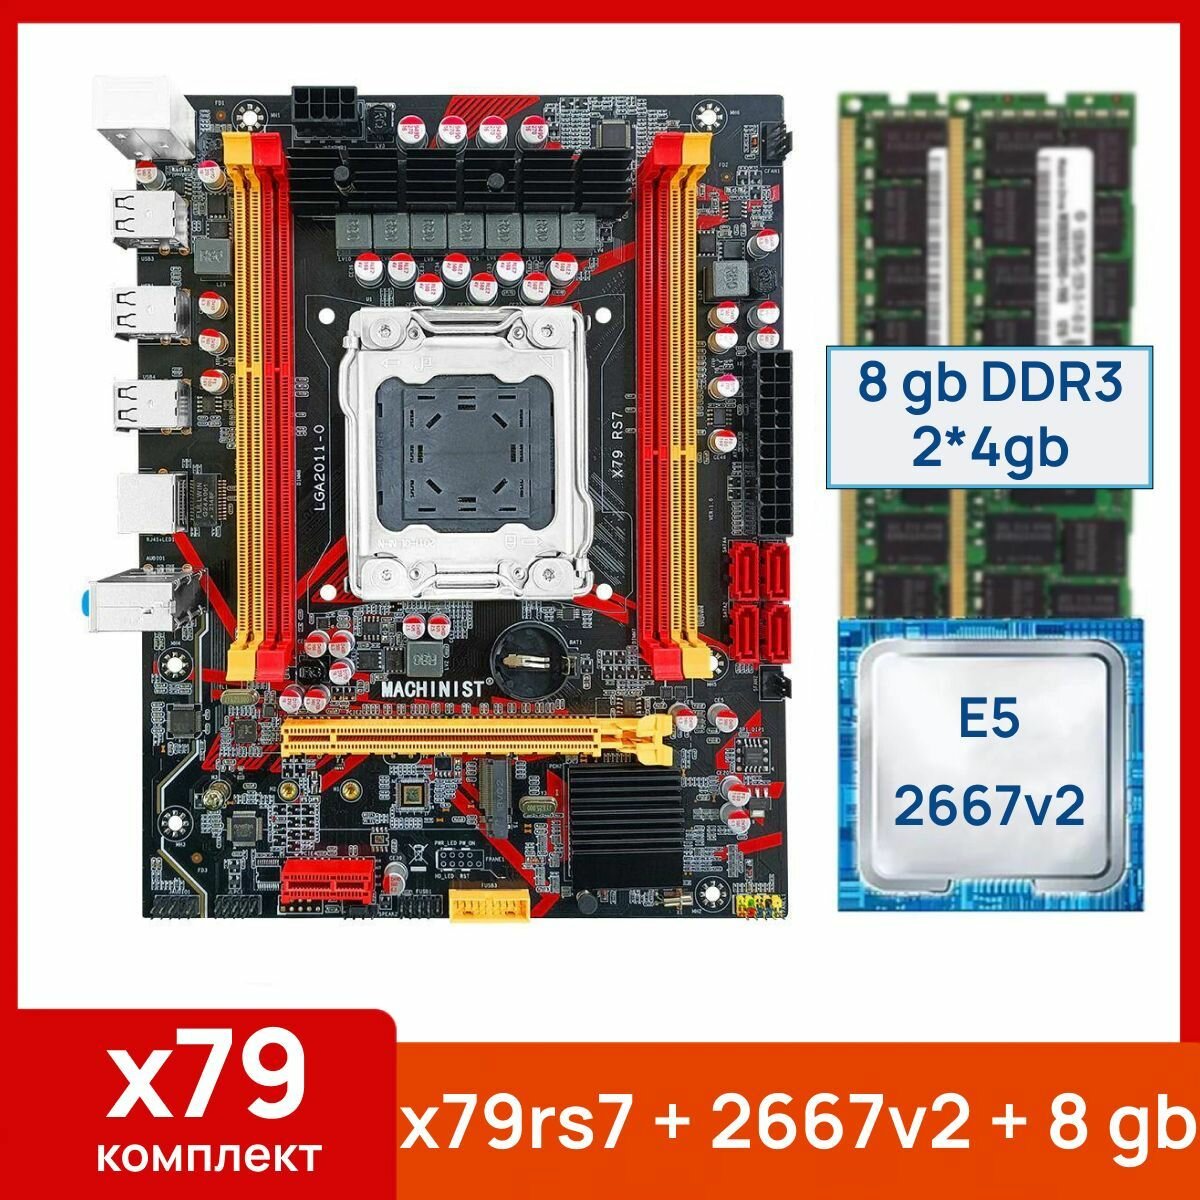 Комплект: Материнская плата Machinist RS-7 + Процессор Xeon E5 2667v2 + 8 gb(2x4gb) DDR3 серверная